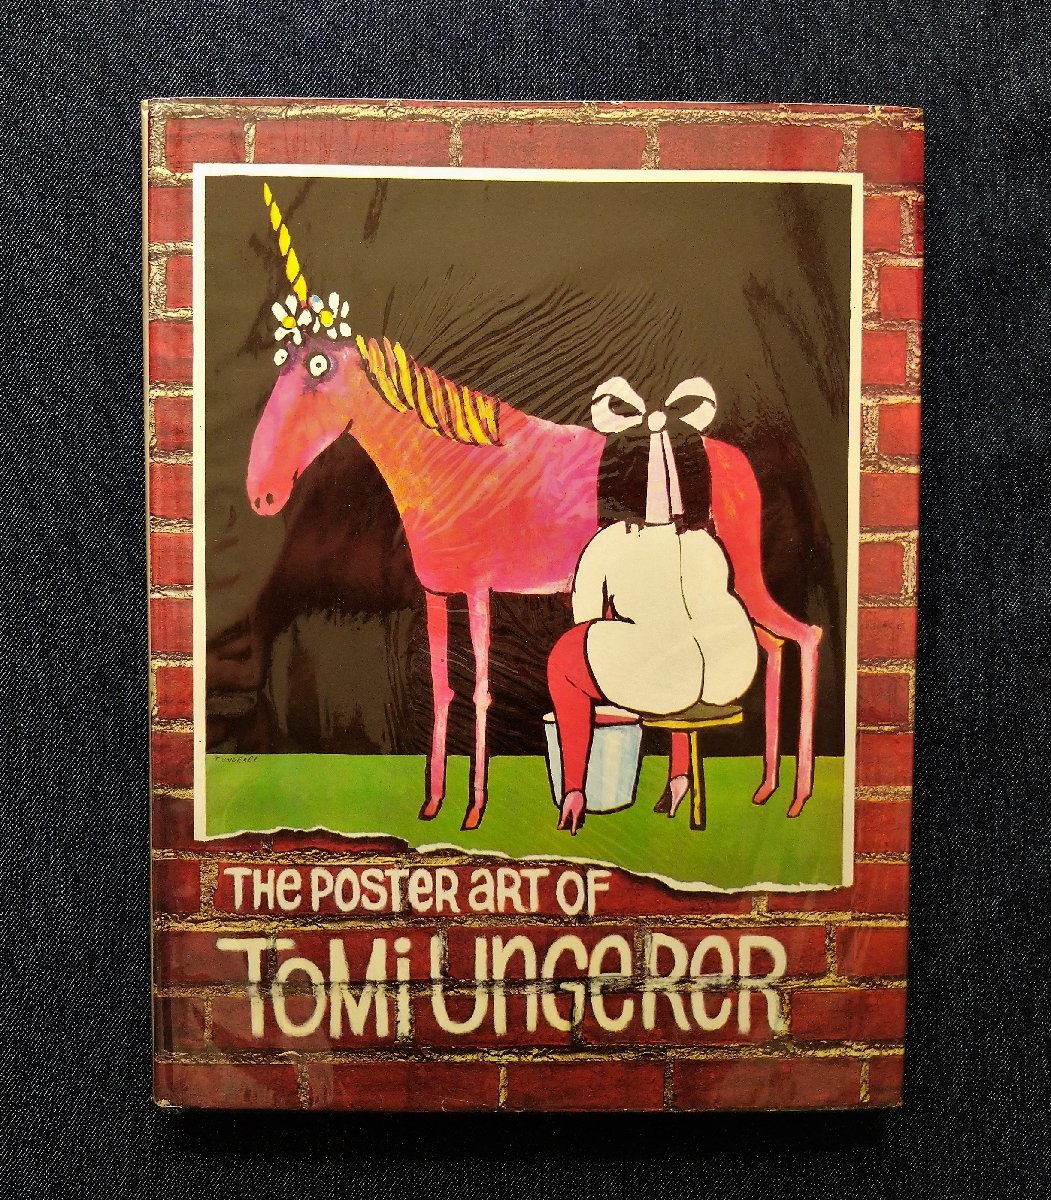  Tommy *ungela- постер сборник произведений 1971 год The Poster Art of Tomi Ungerer иностранная книга машина палец на ноге n способ .. иллюстрации 